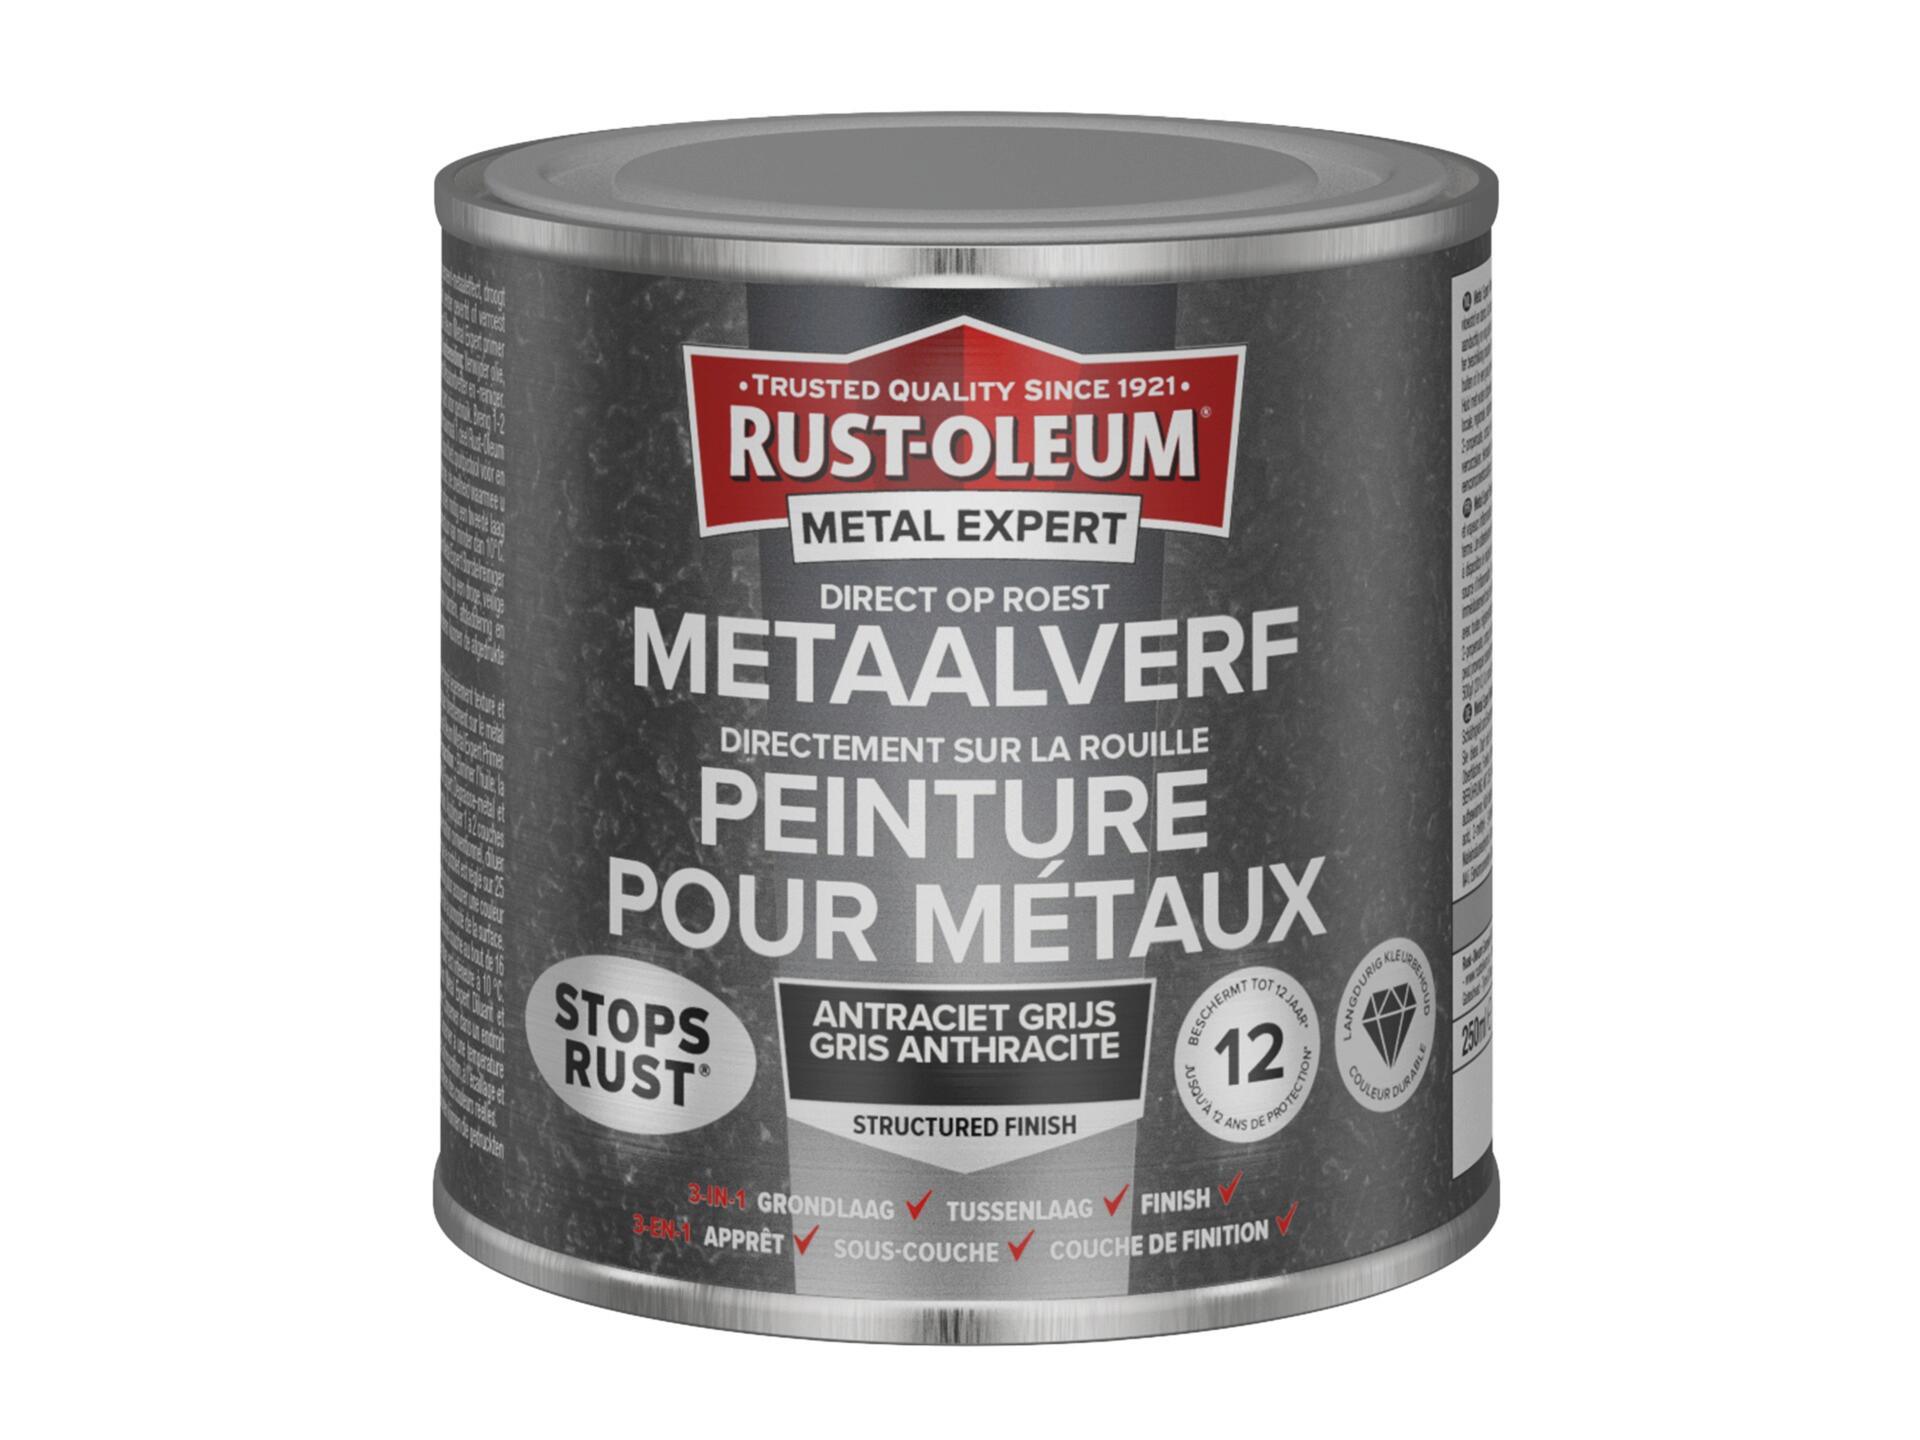 Rust-oleum Metal Expert peinture pour métaux structuré 250ml anthracite